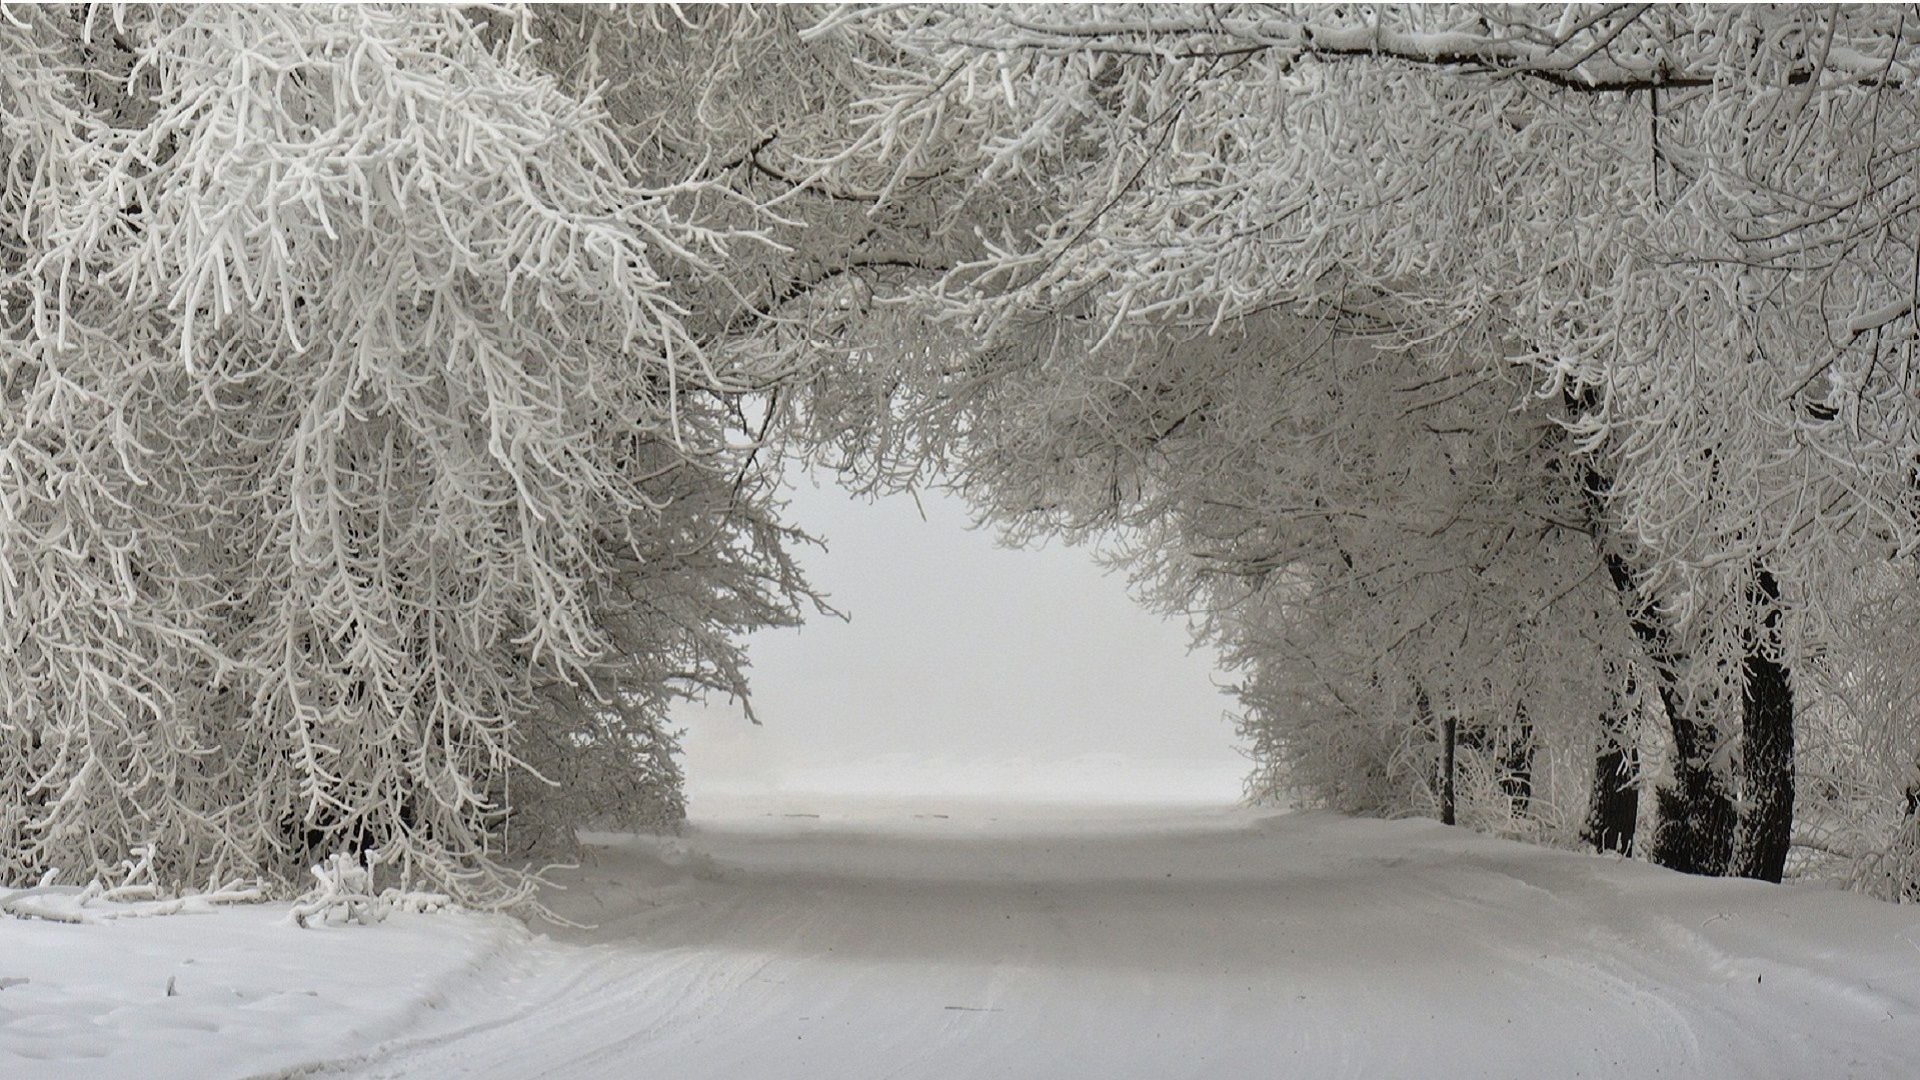 1920x1080 Winter - Snow Tunnel Street Trees Landscape Ice Wallpaper Winter Desktop  for HD 16:9